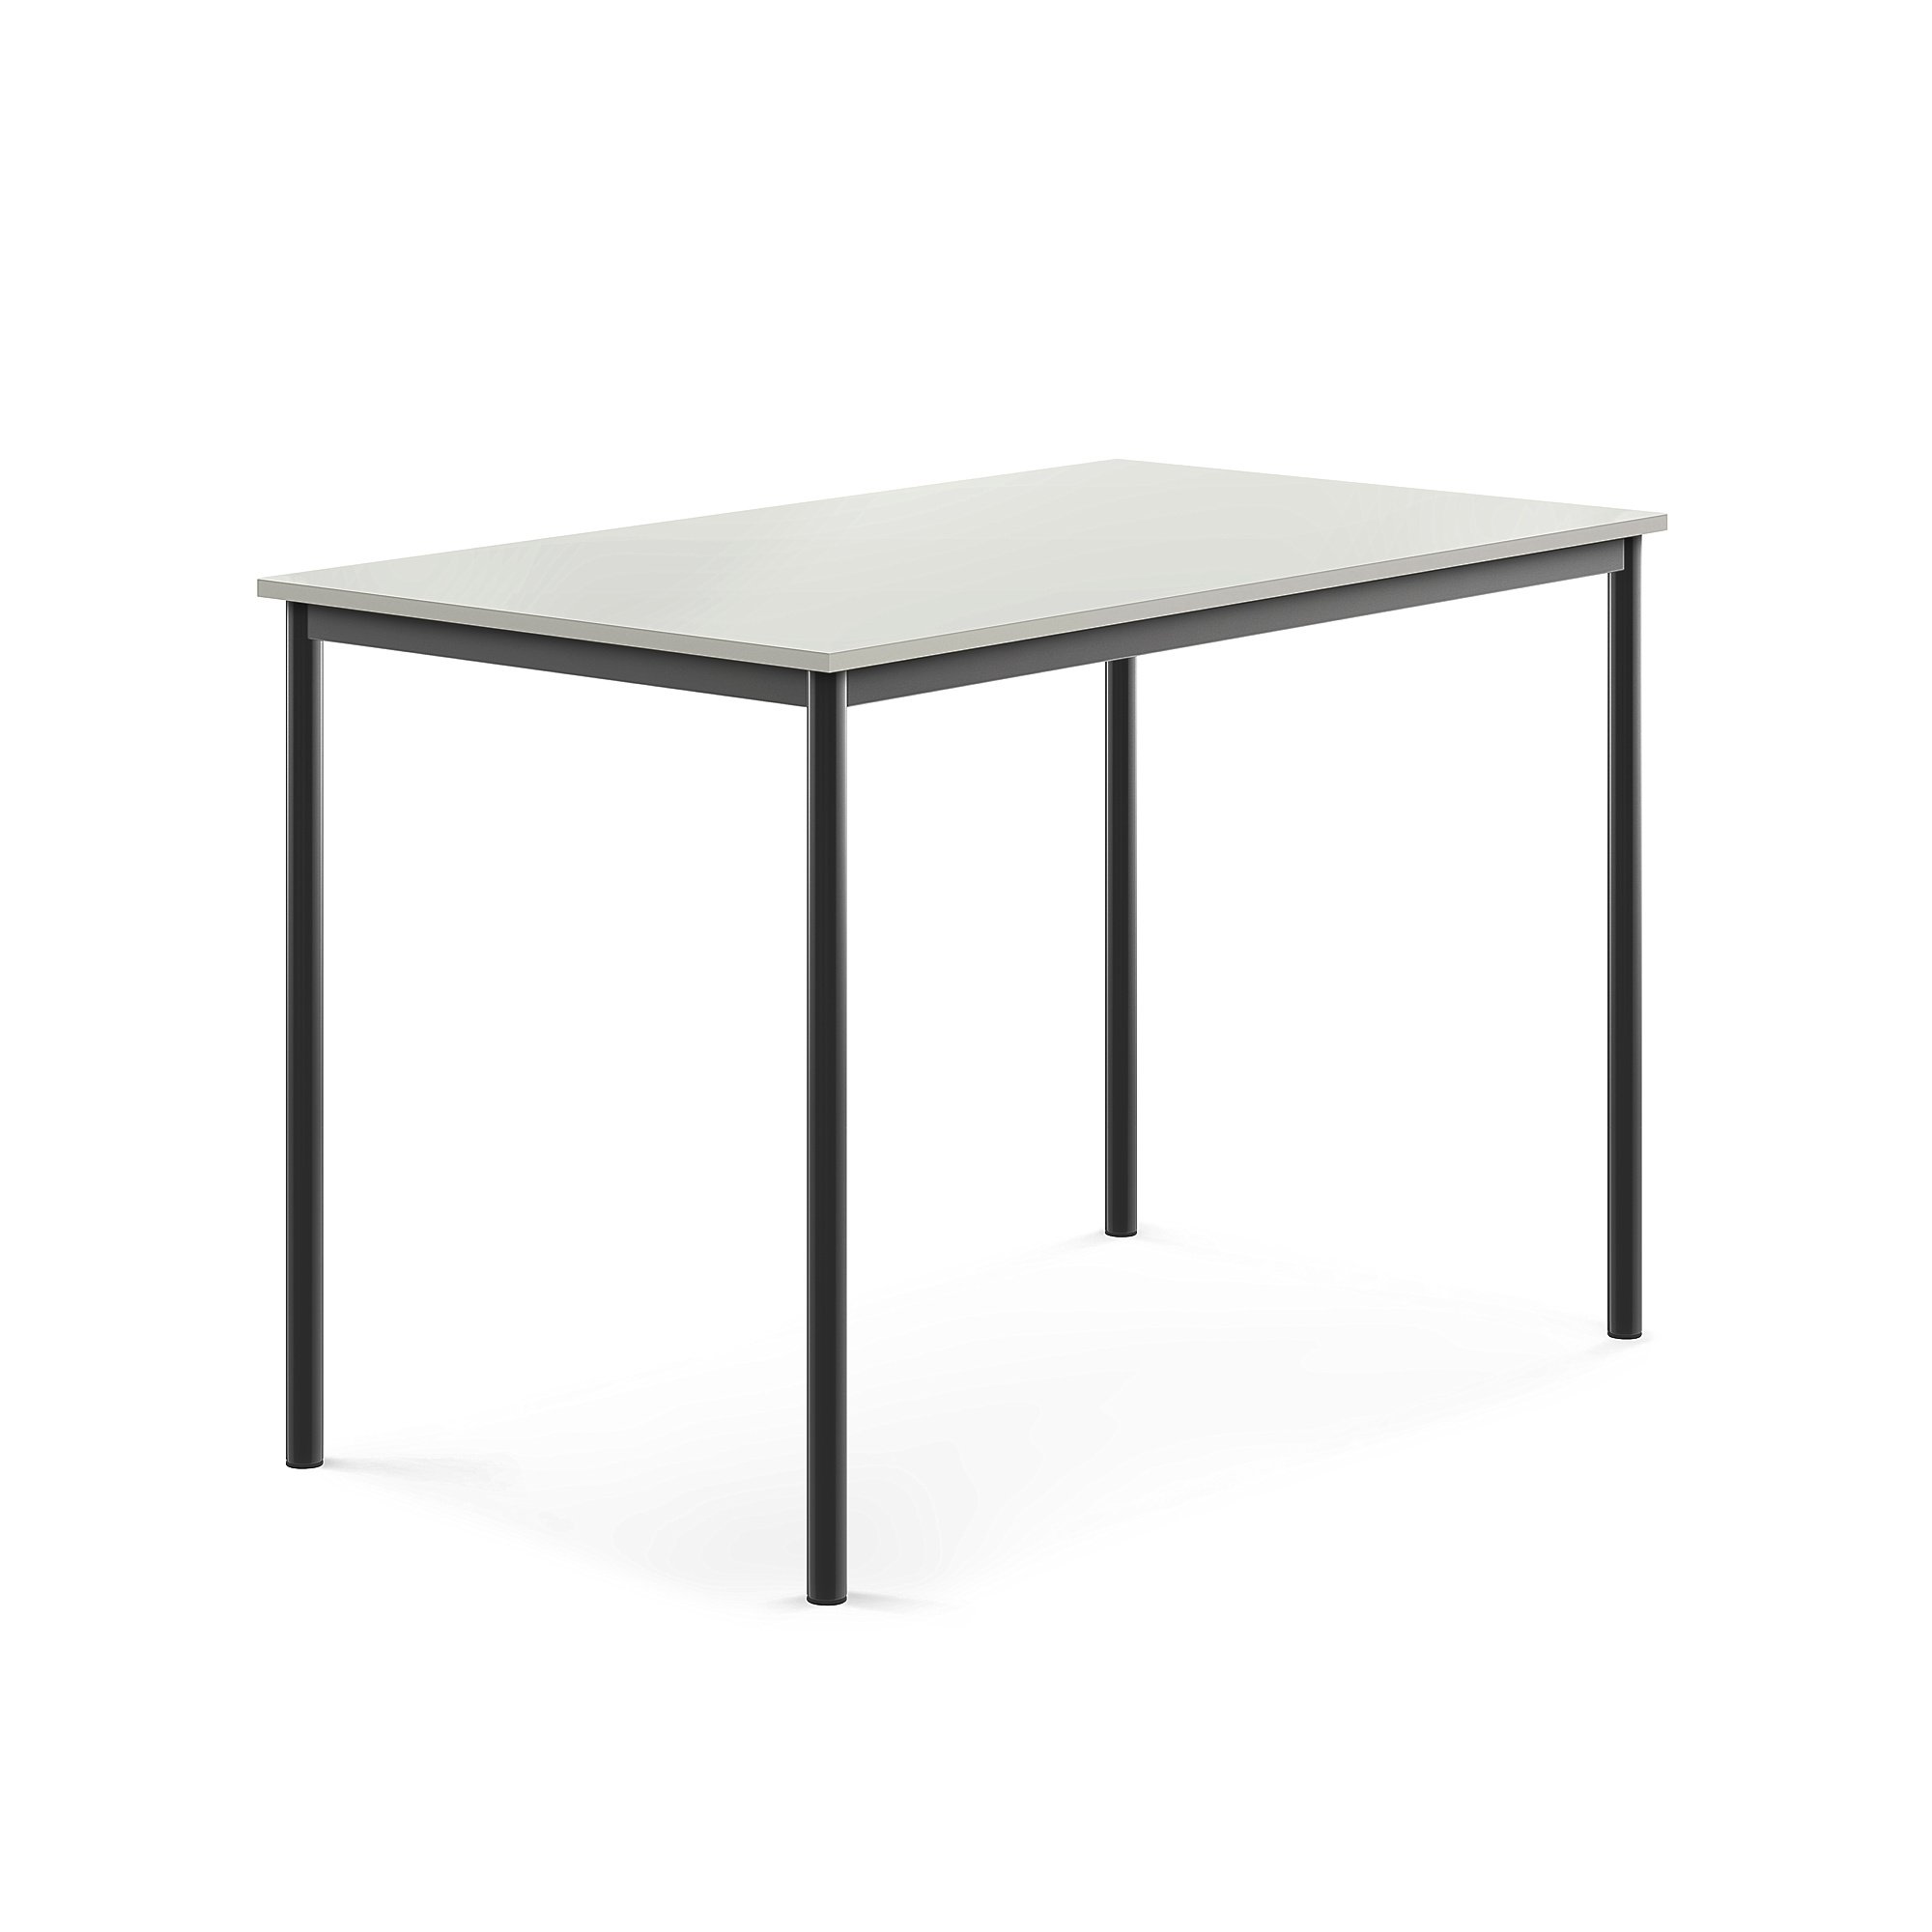 Stůl BORÅS, 1400x800x900 mm, antracitově šedé nohy, HPL deska, šedá